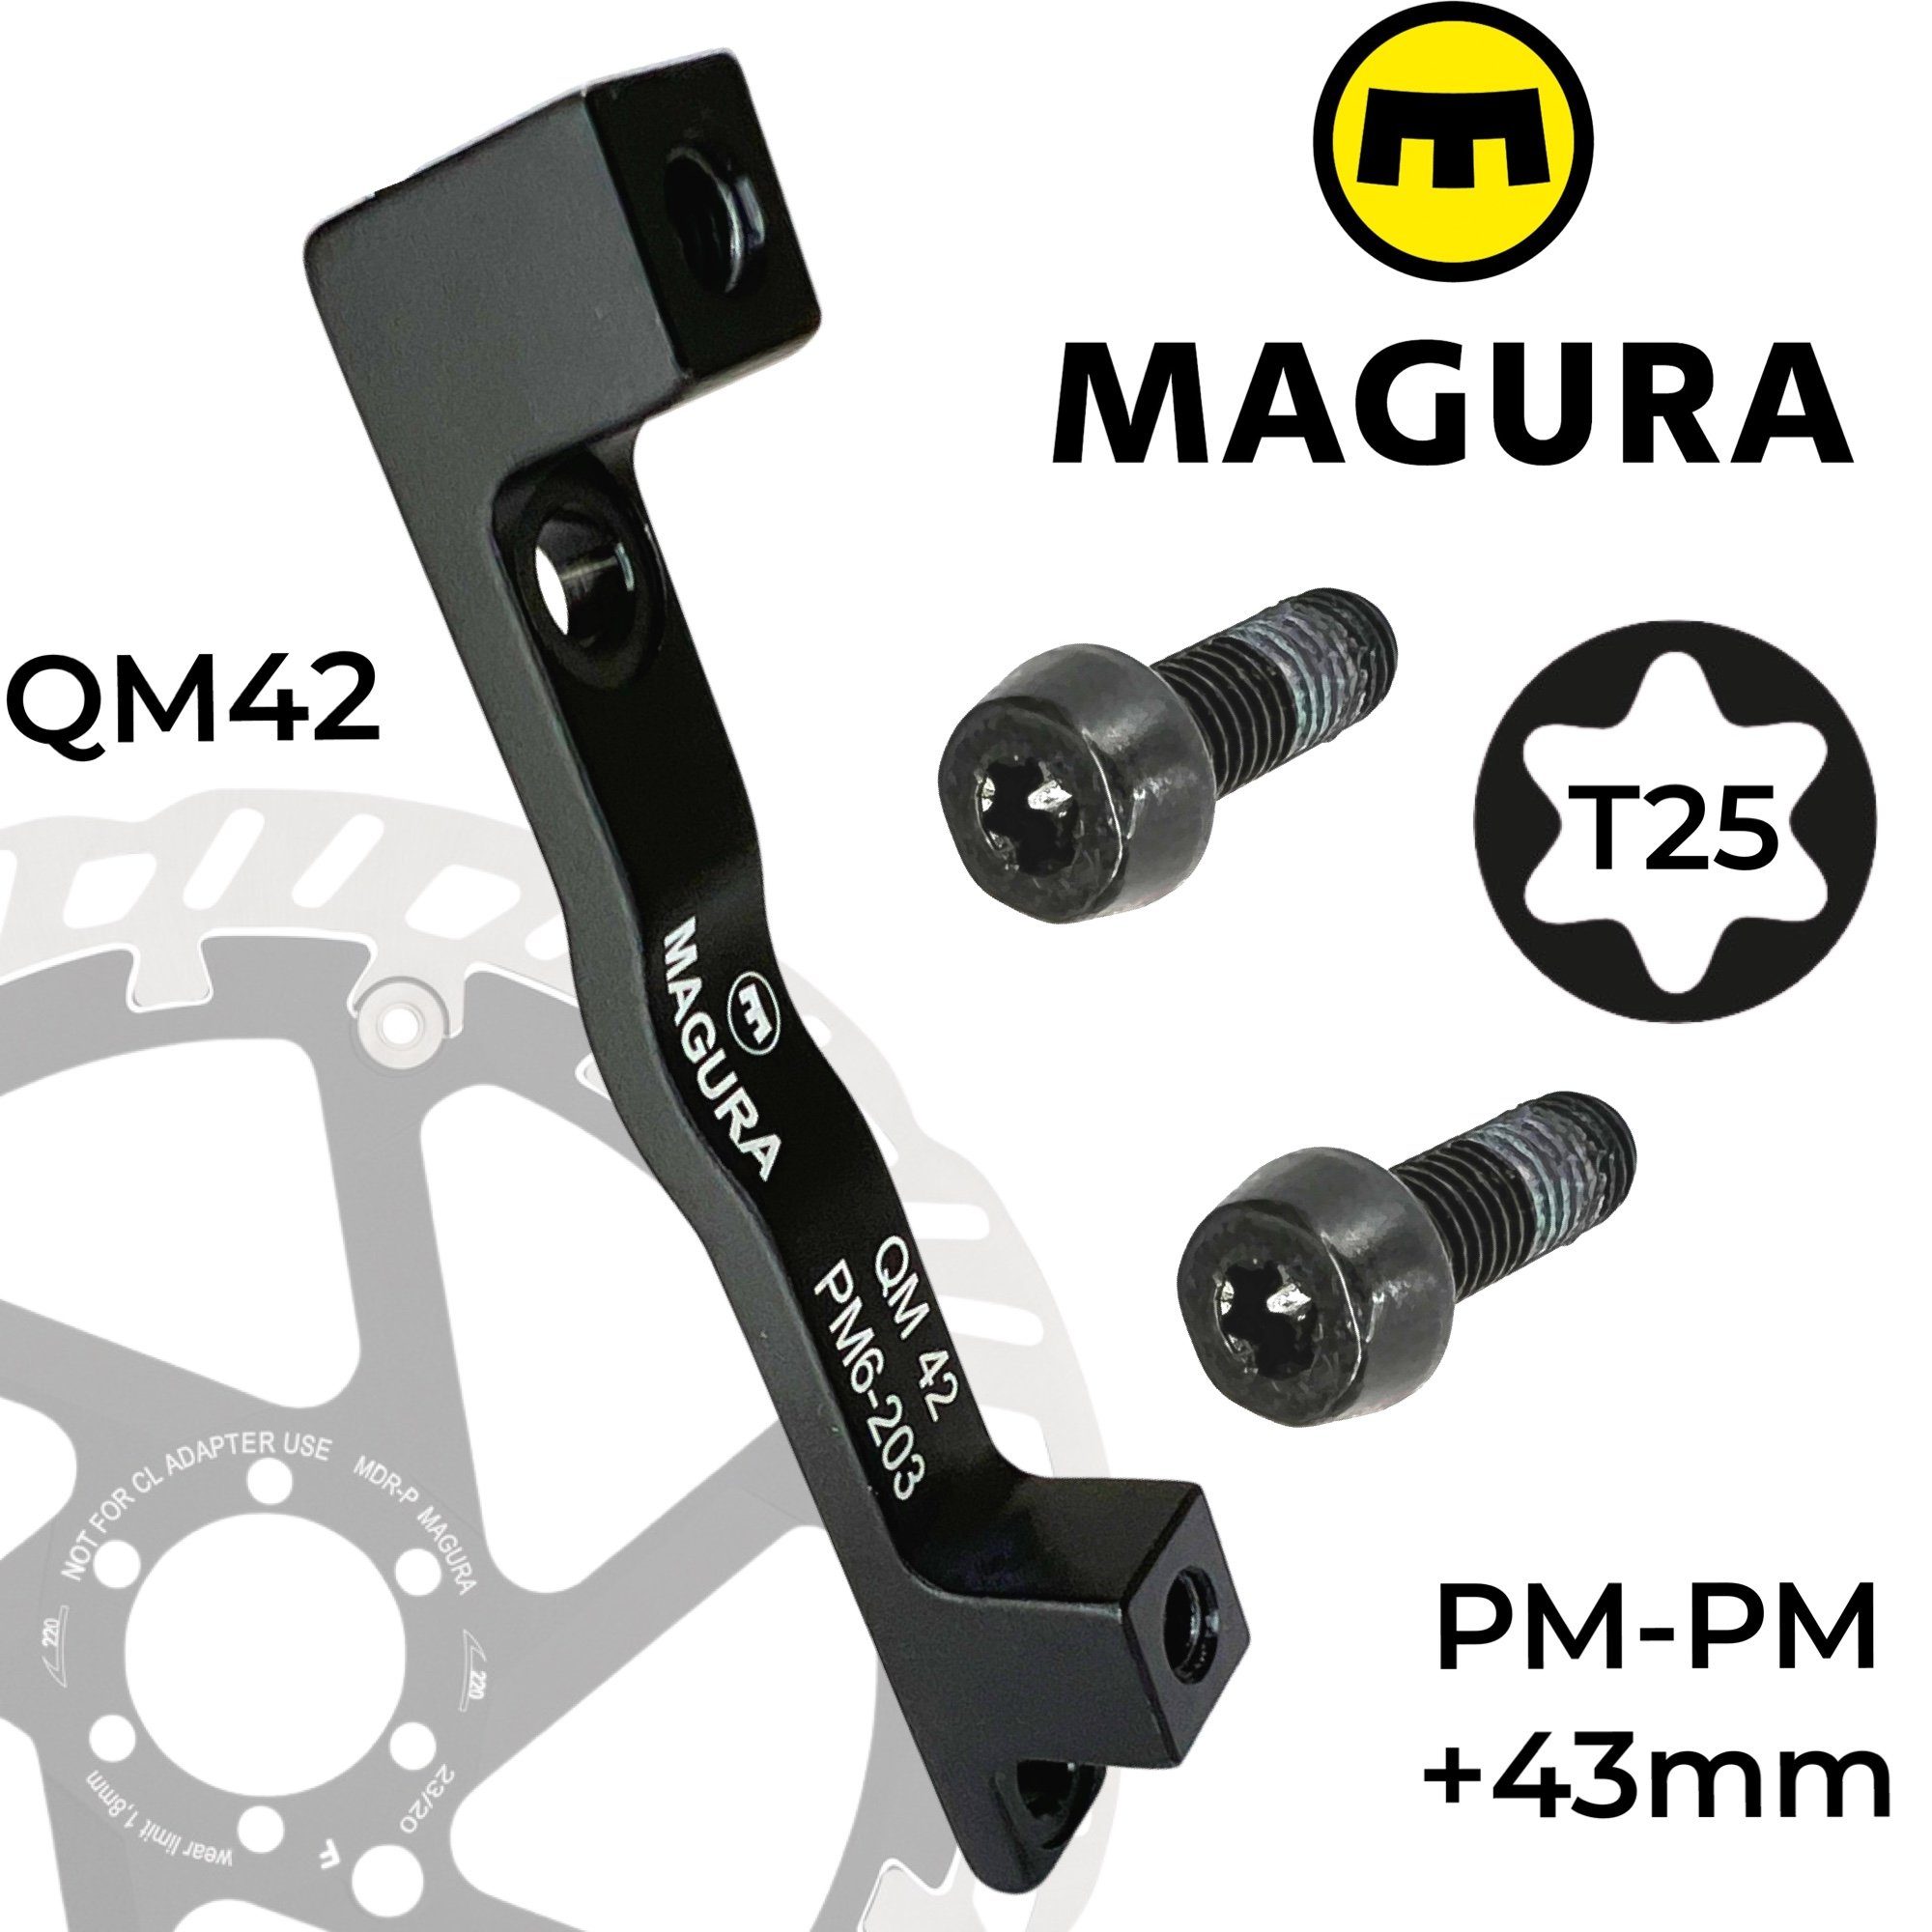 Bremsscheiben Scheibenbremse QM42 +43mm 160-203 Adapter Magura Magura PM